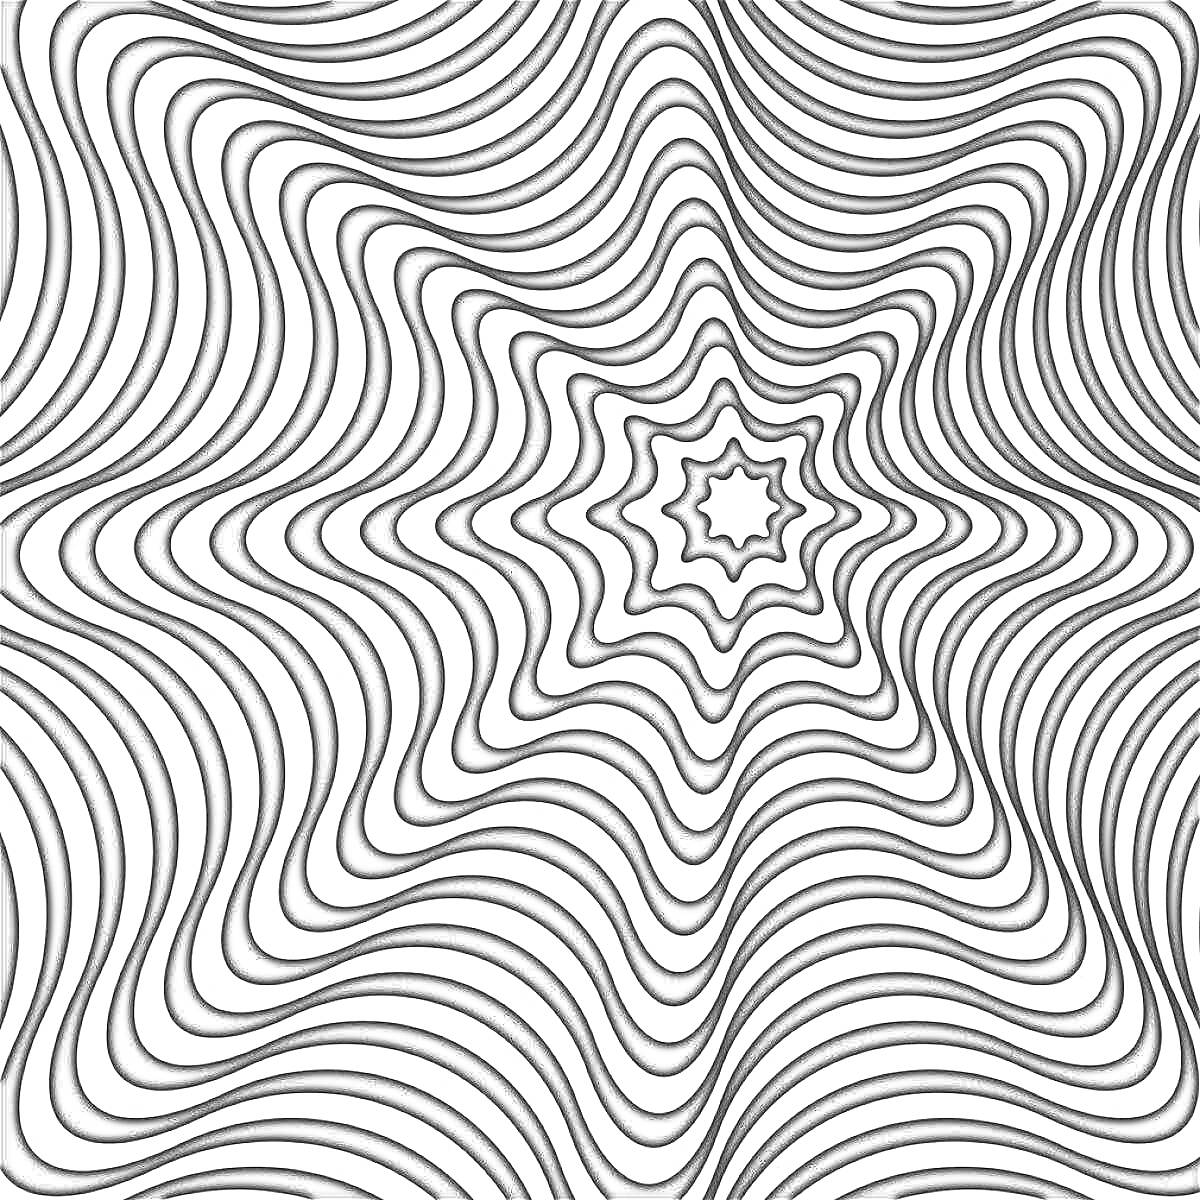 Раскраска Пси-арт оптическая иллюзия с черно-белыми волнистыми линиями, создающими звездный паттерн